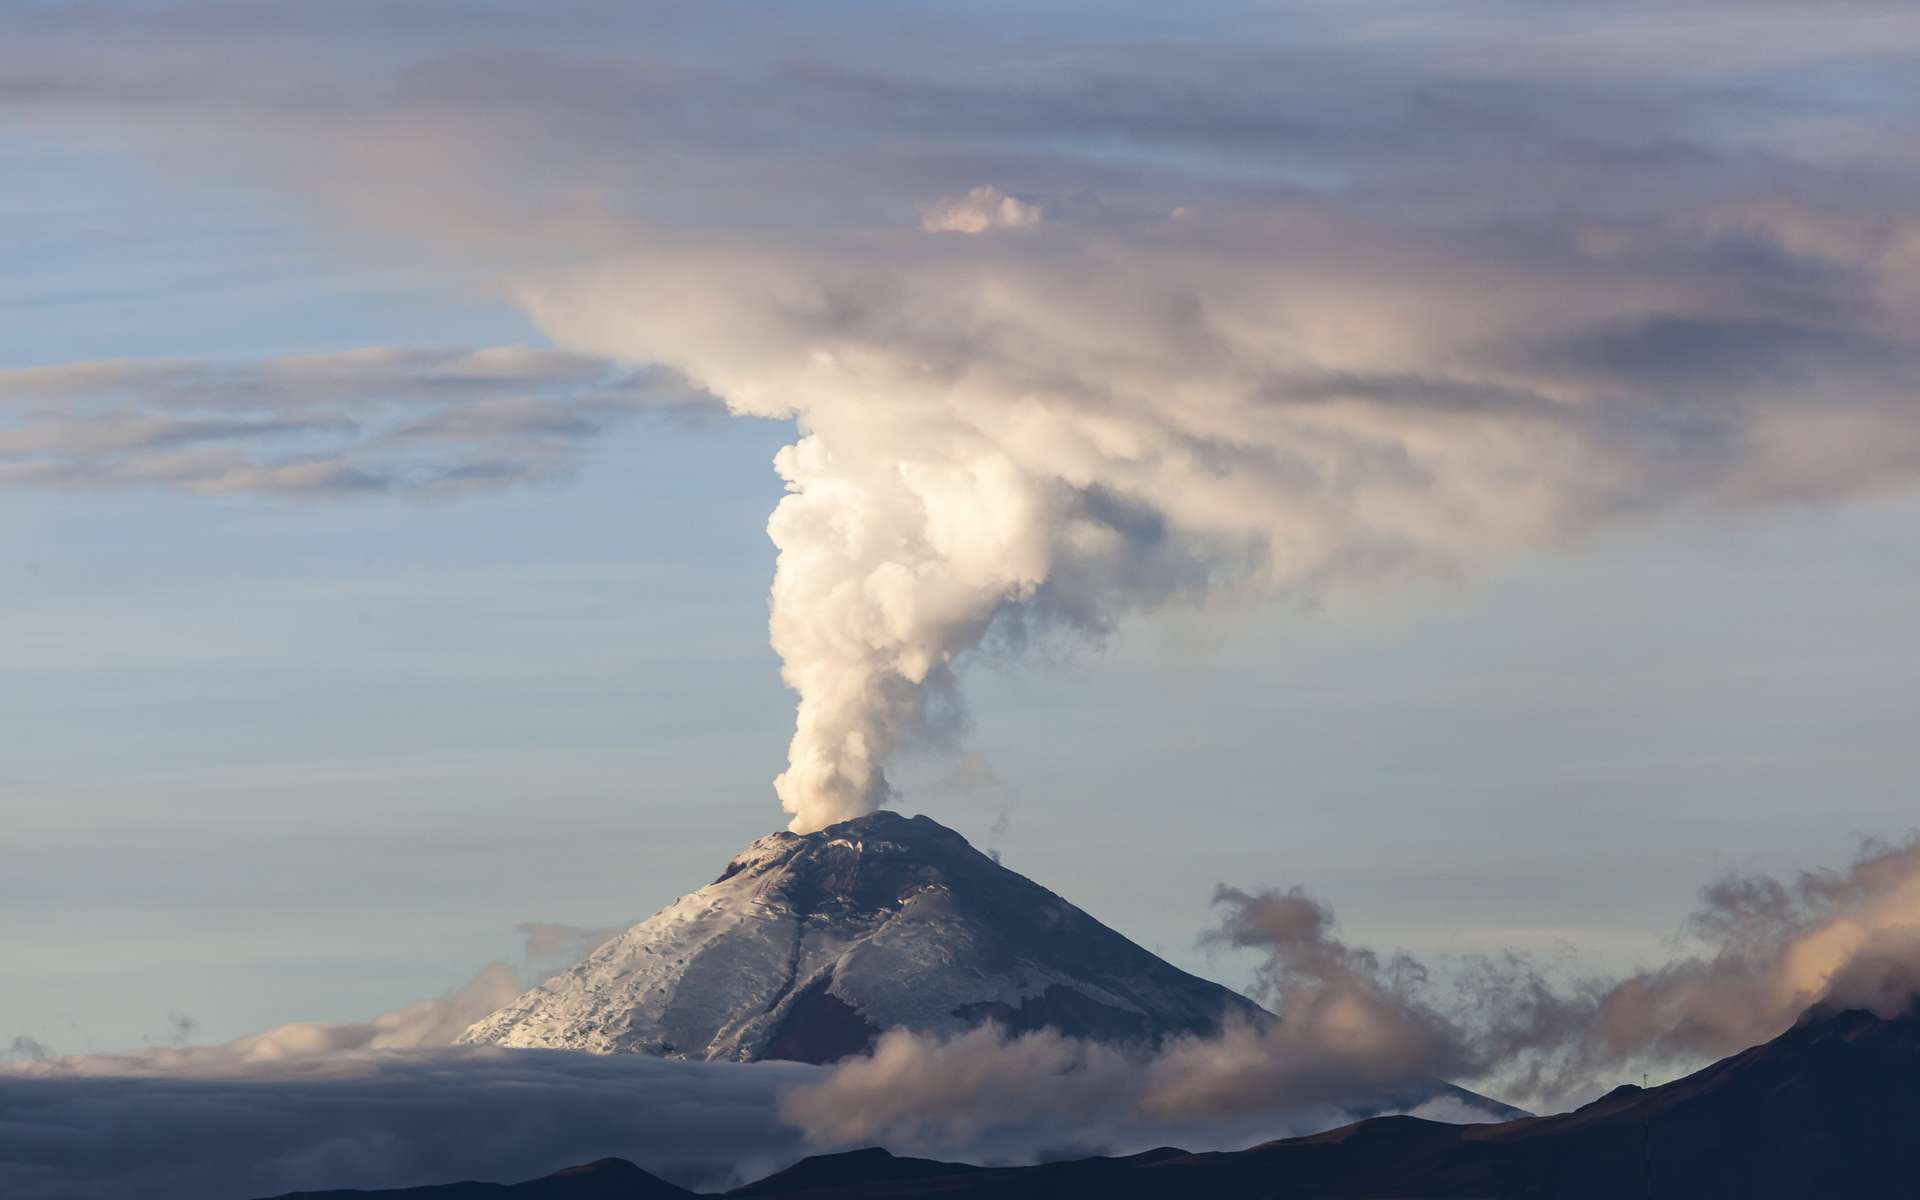 Les quantités massives de gaz et de cendres rejetées par les éruptions volcaniques peuvent avoir un impact temporaire sur le climat de la Planète entière. © Ecuadorquerido, Adobe Stock